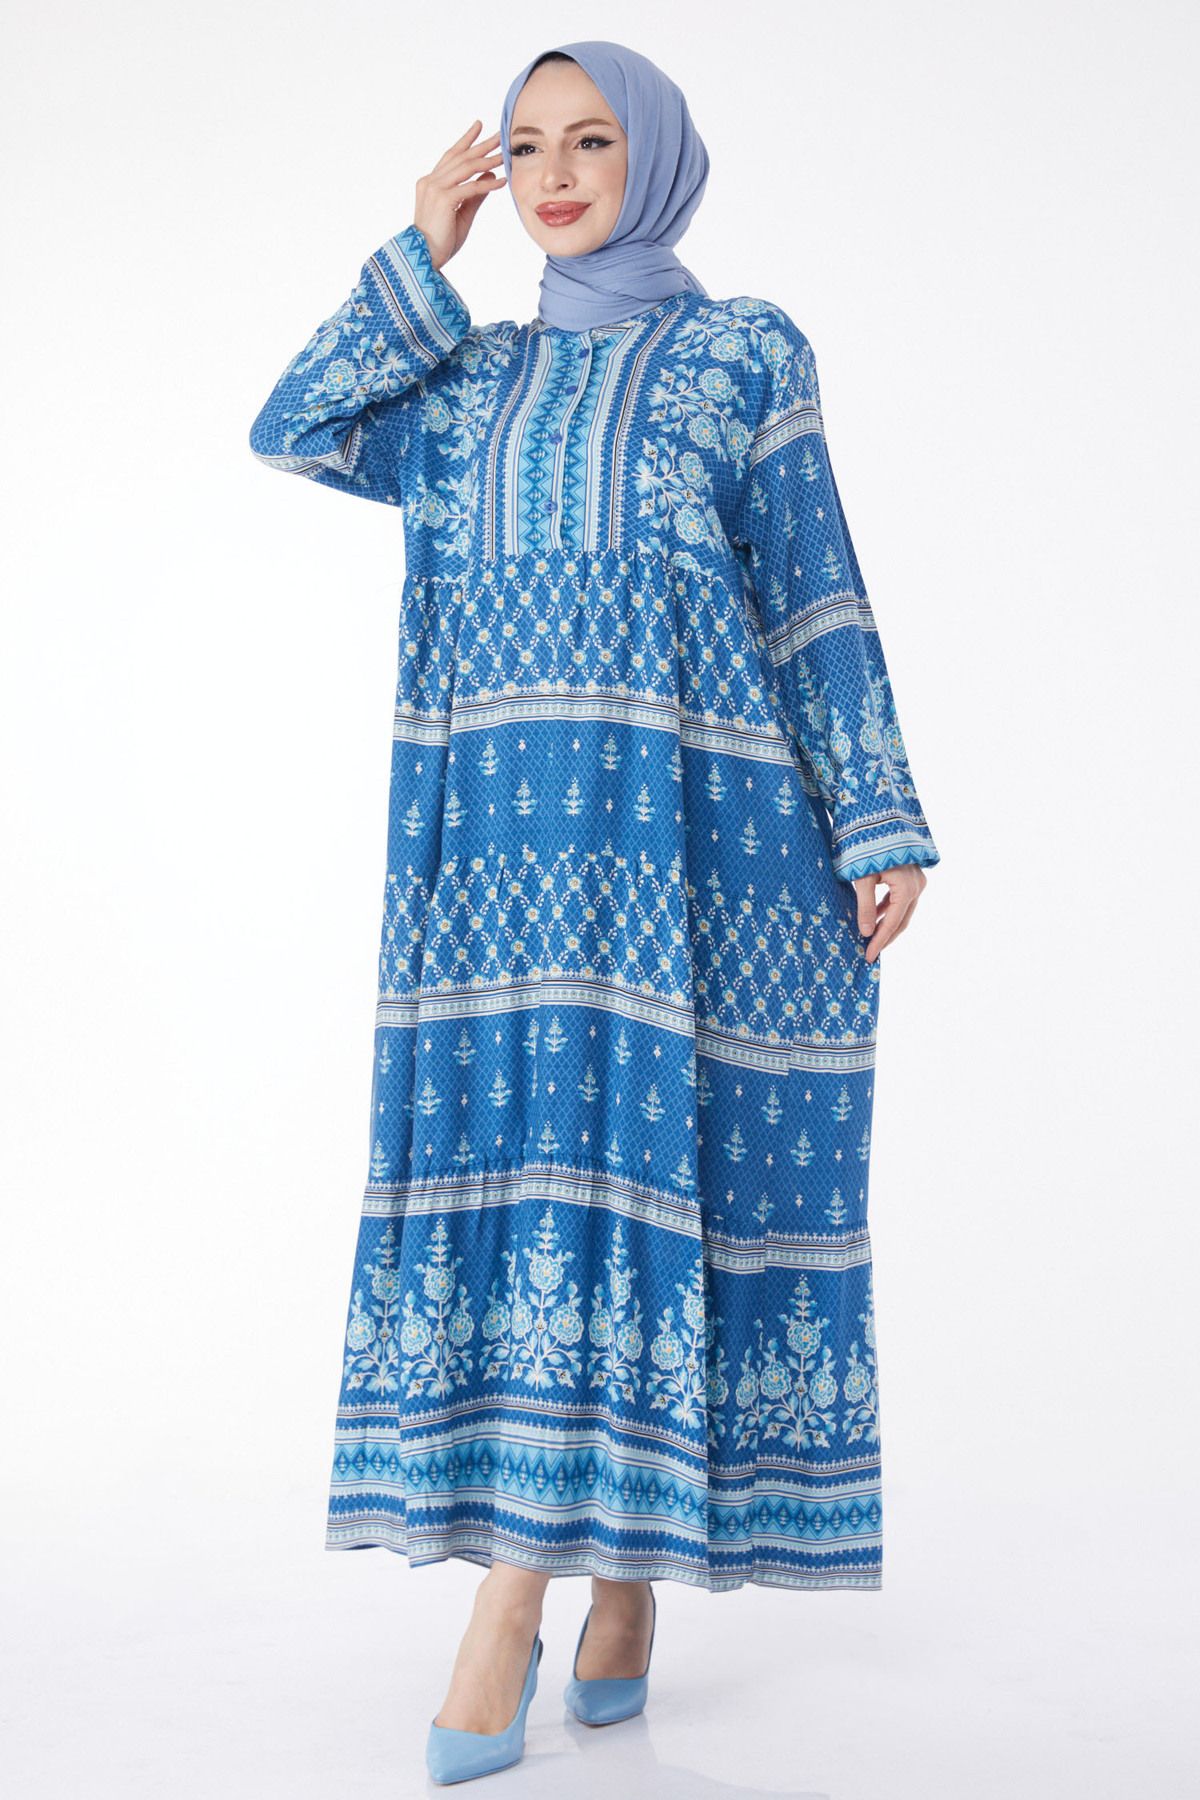 TOFİSA Düz Hakim Yaka Kadın Mavi Desenli Düğmeli Elbise - 24747